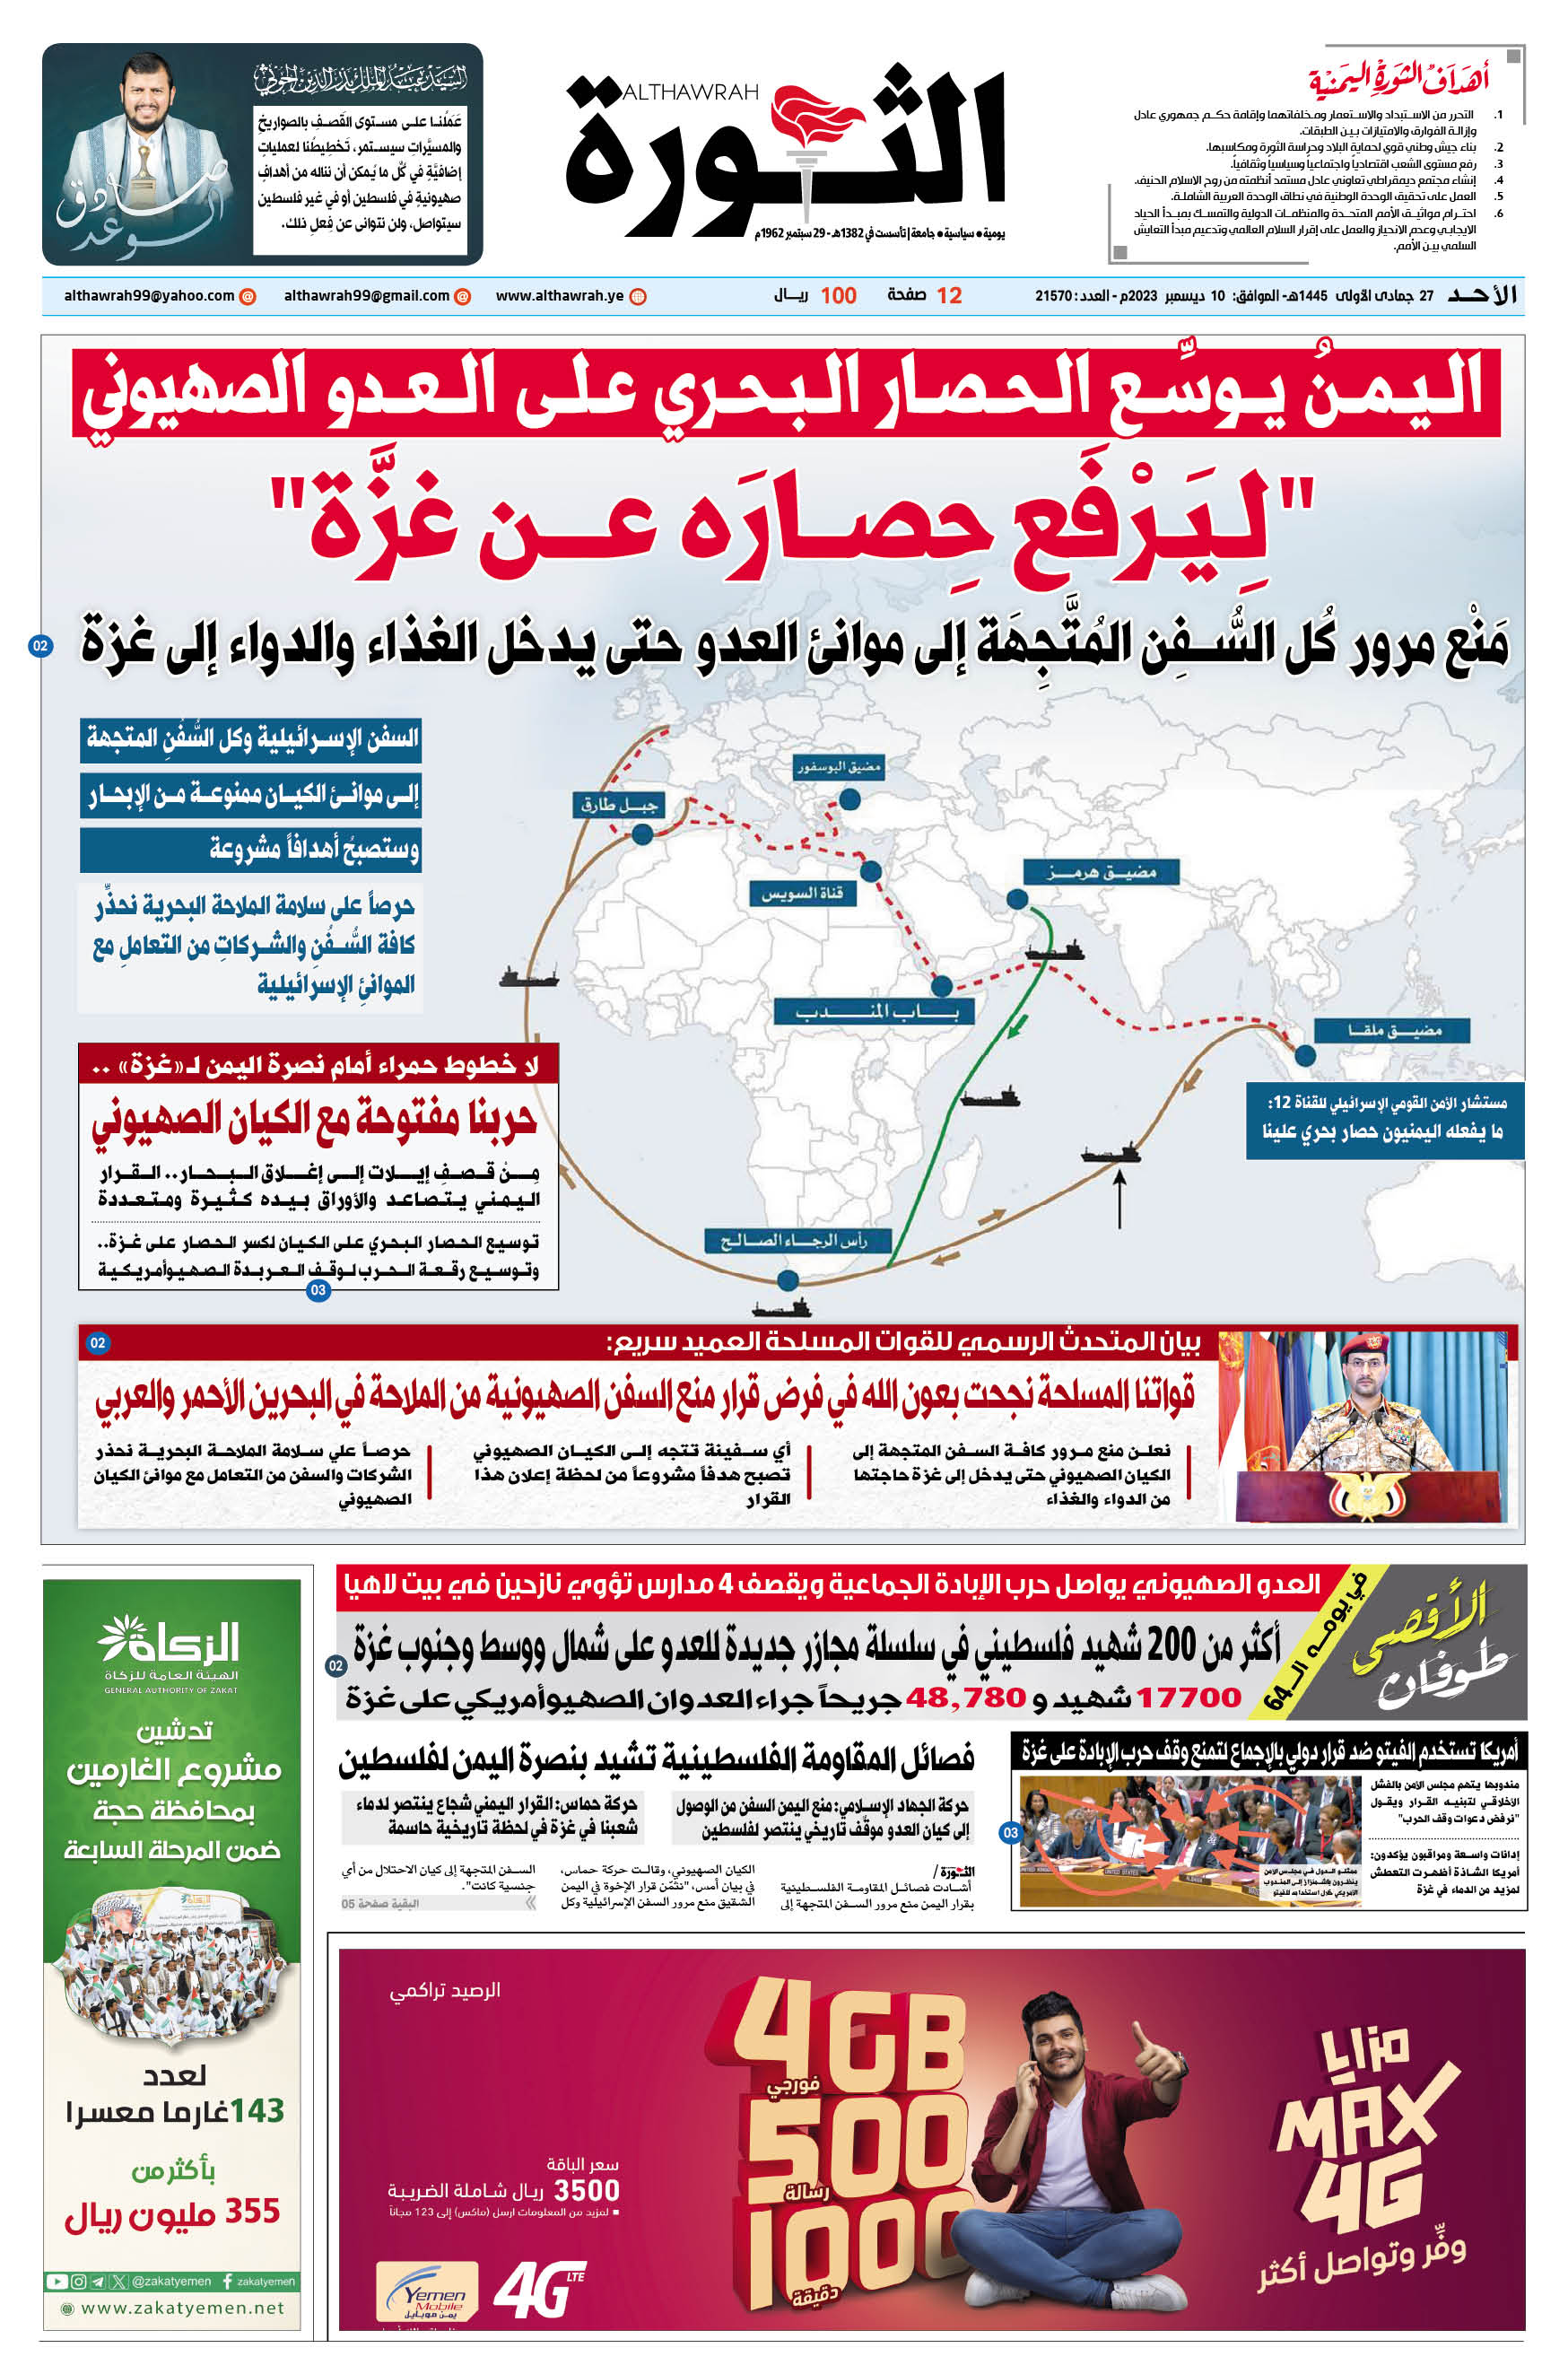 صحيفة الثورة الأحد 27 جمادي الأولى 1445 الموافق 10 ديسمبر 2023